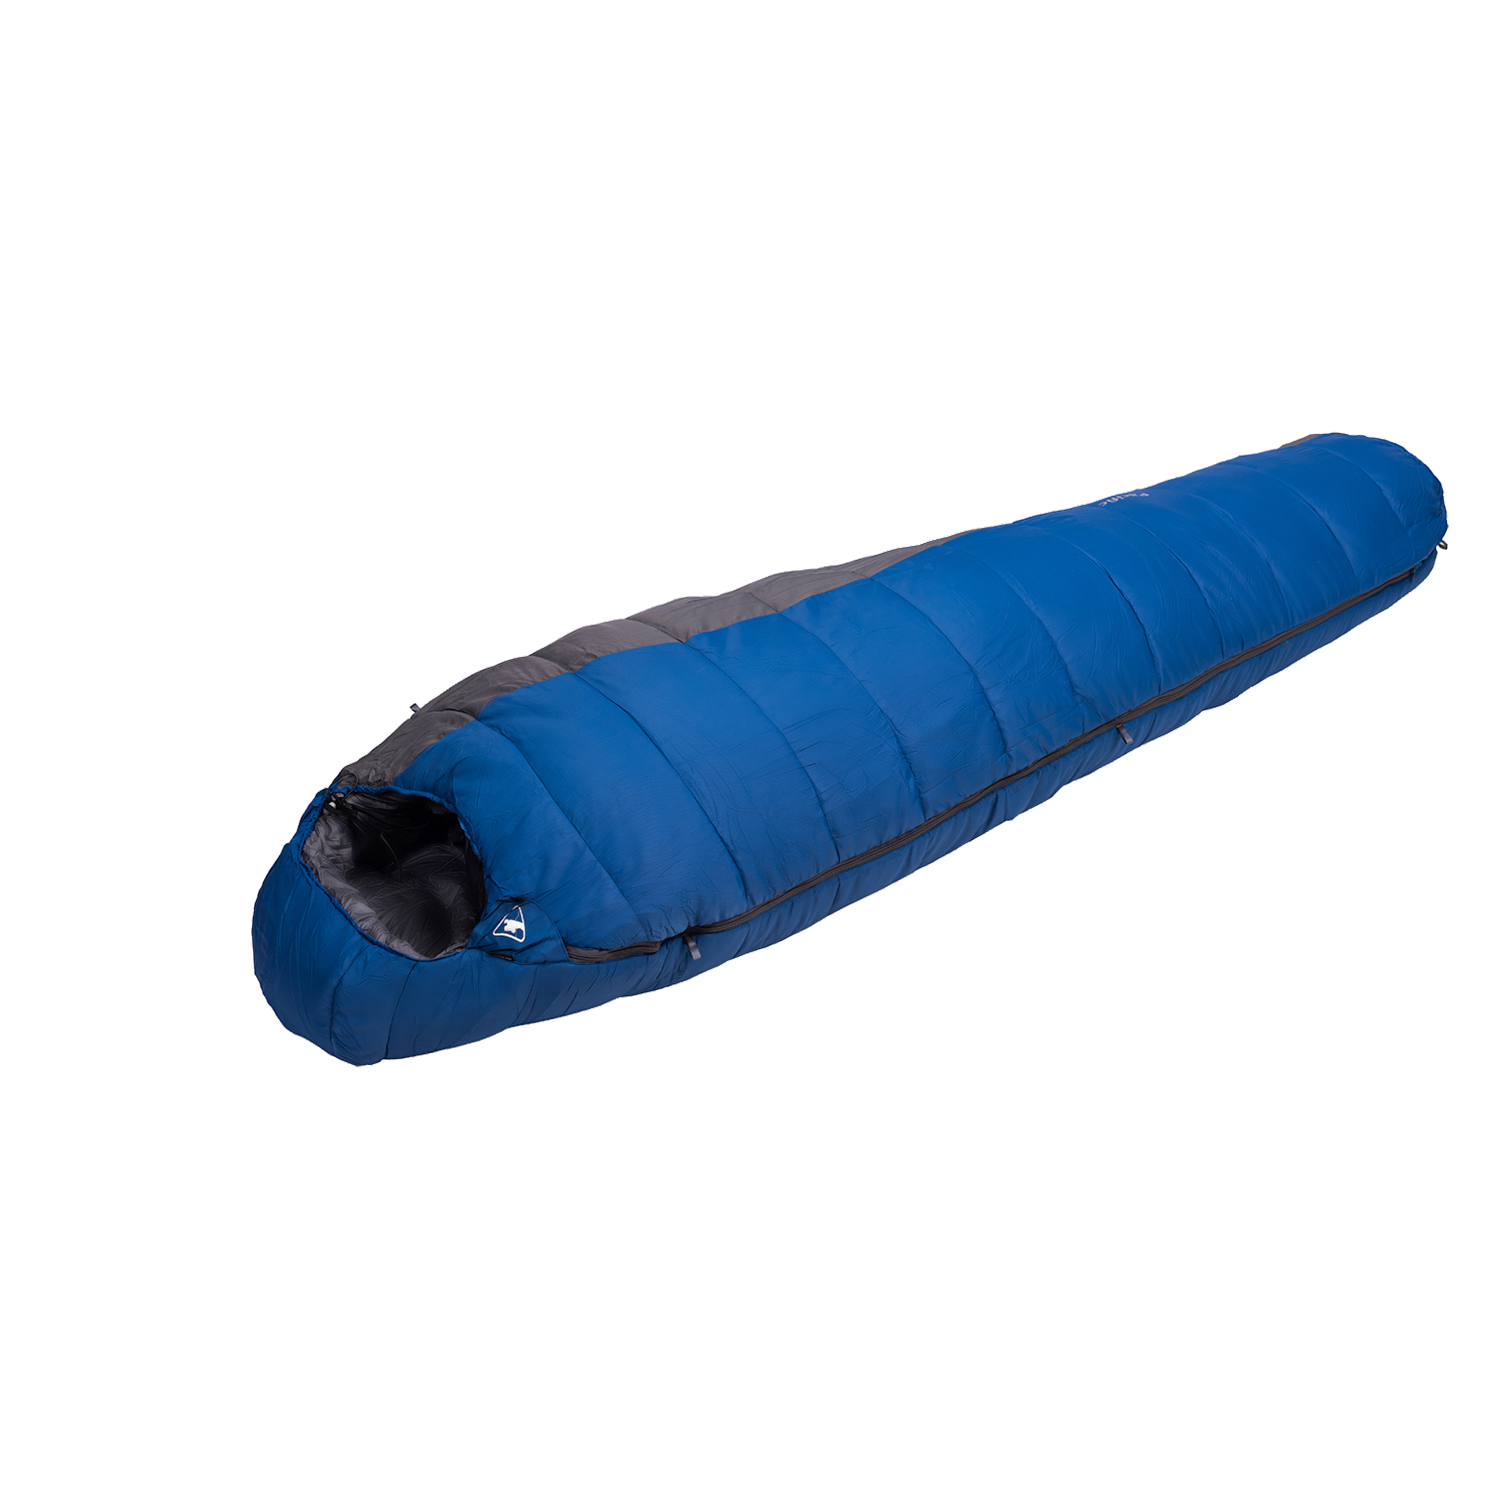 Спальный мешок BASK, размер 26x42, цвет синий 5973-81315-R PACIFIC M - фото 1